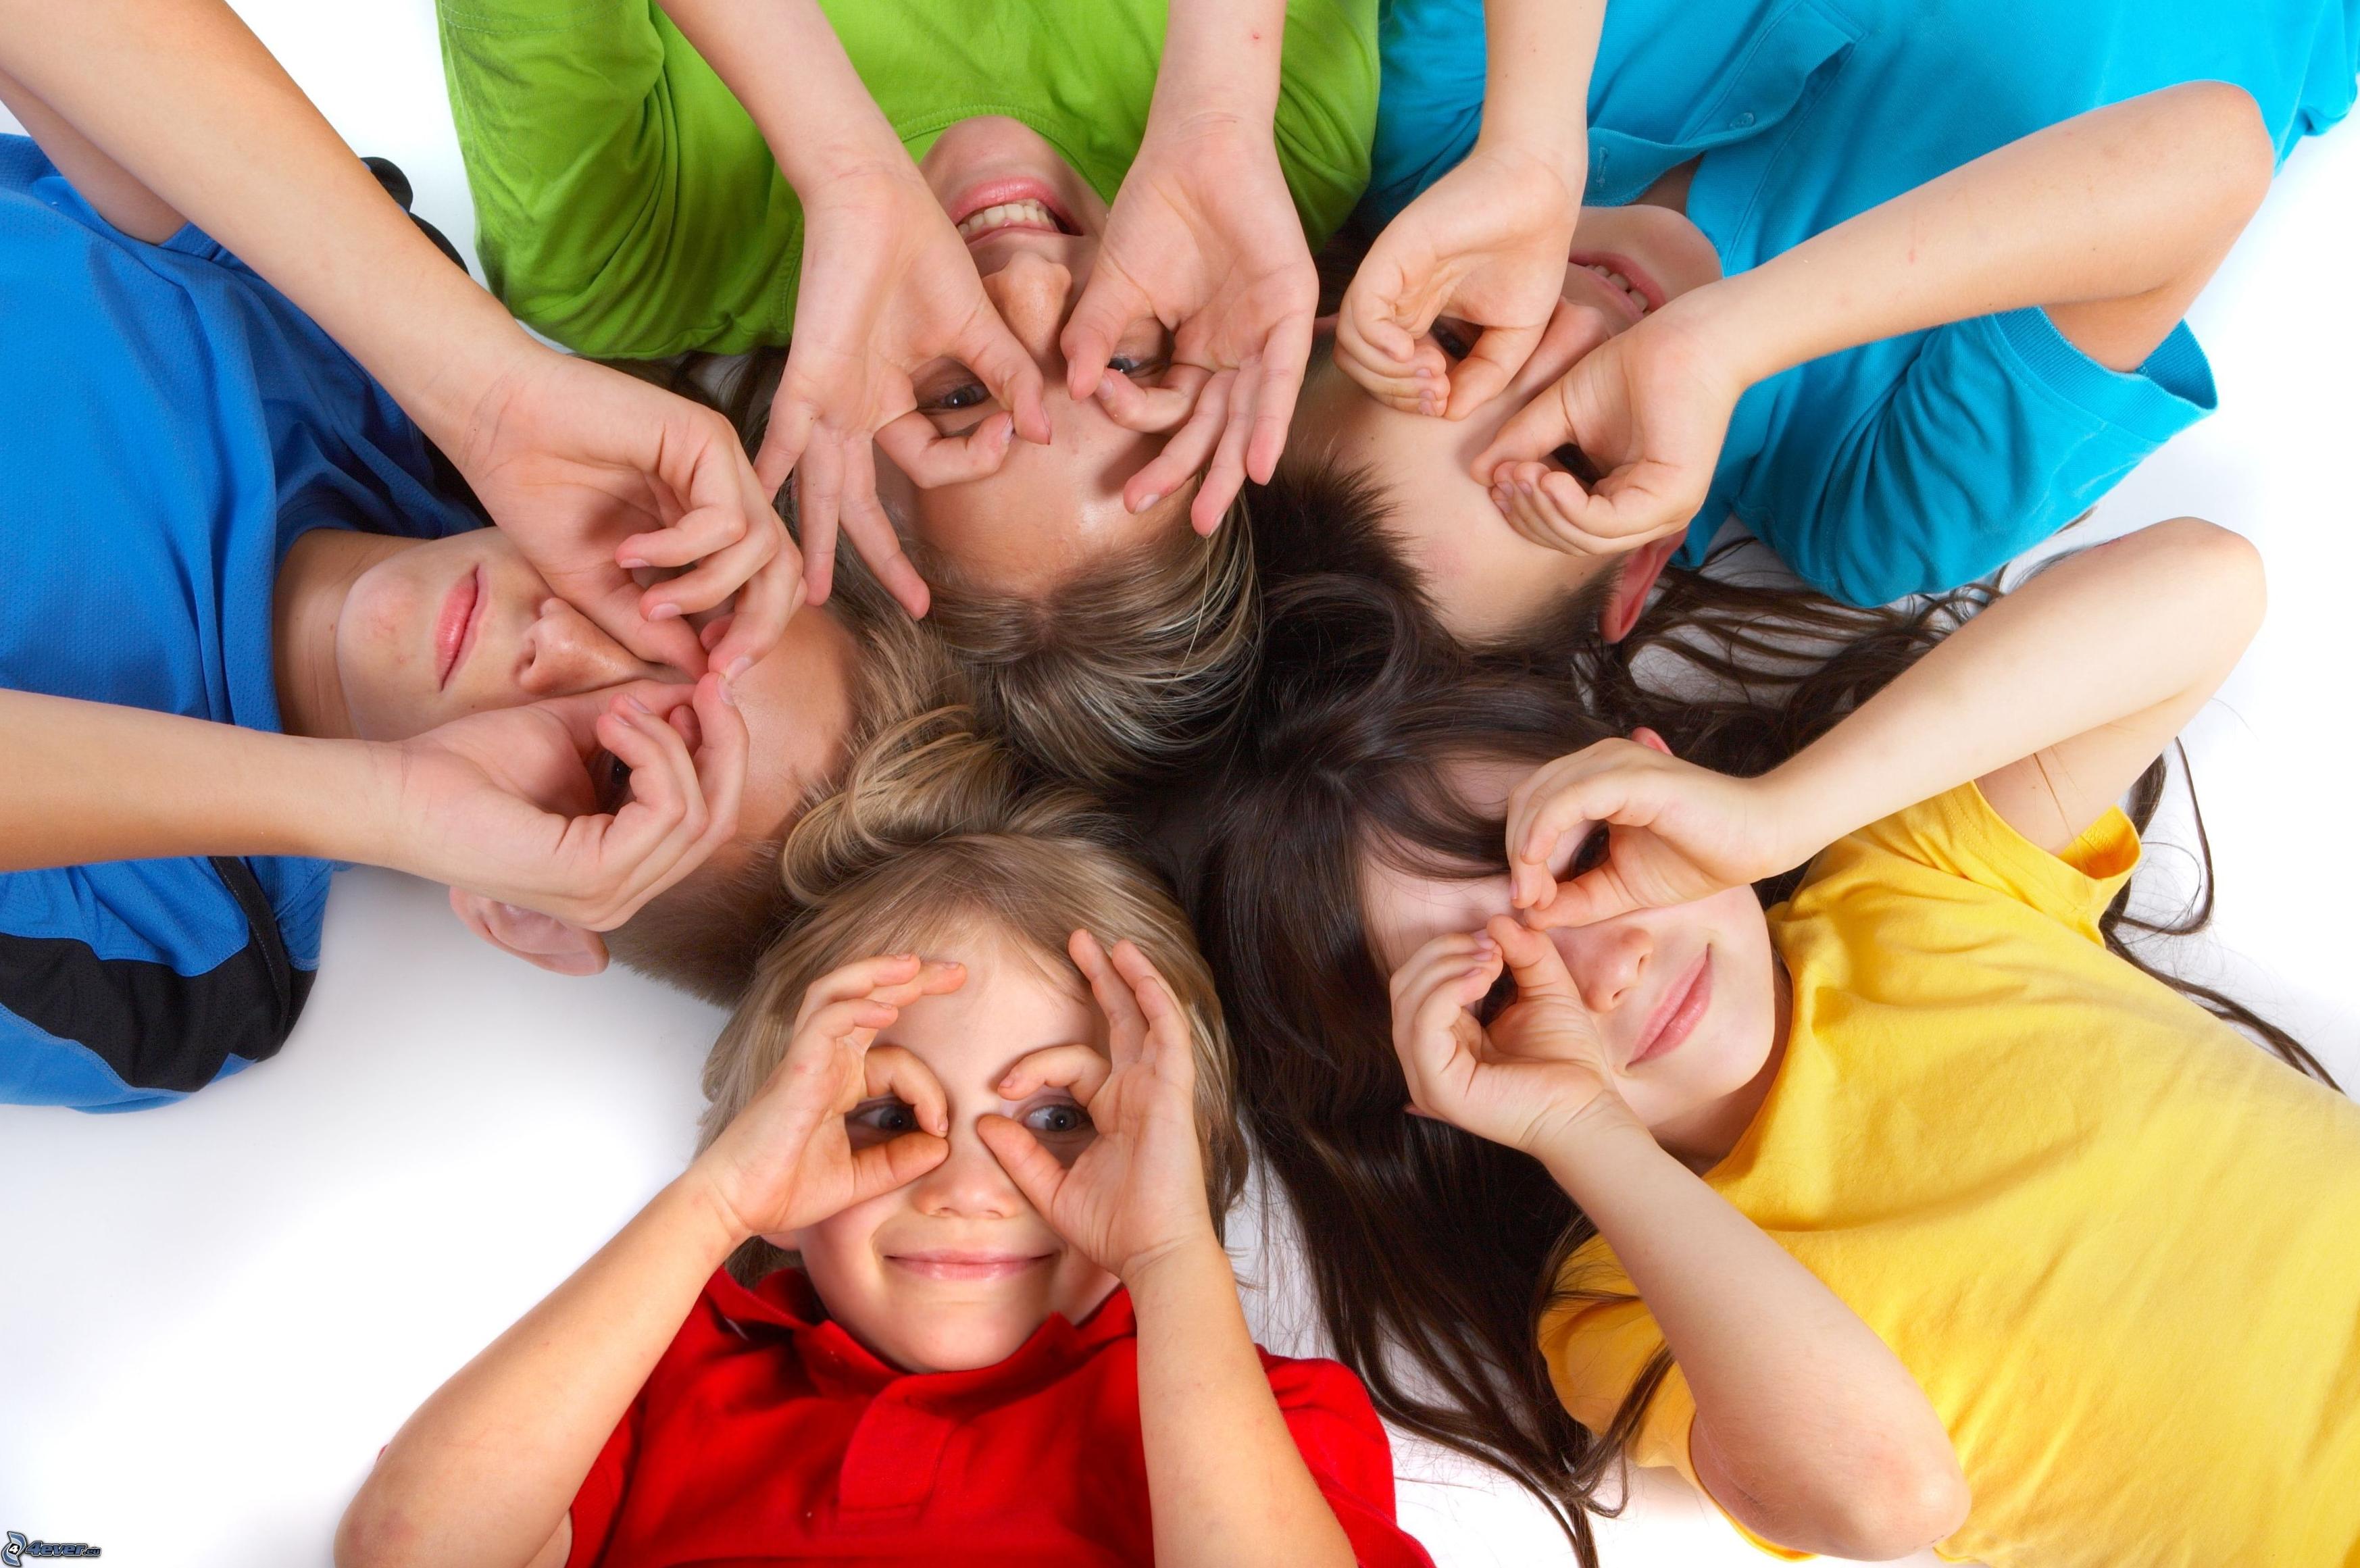 Las 10 preguntas más frecuentes sobre odontología infantil